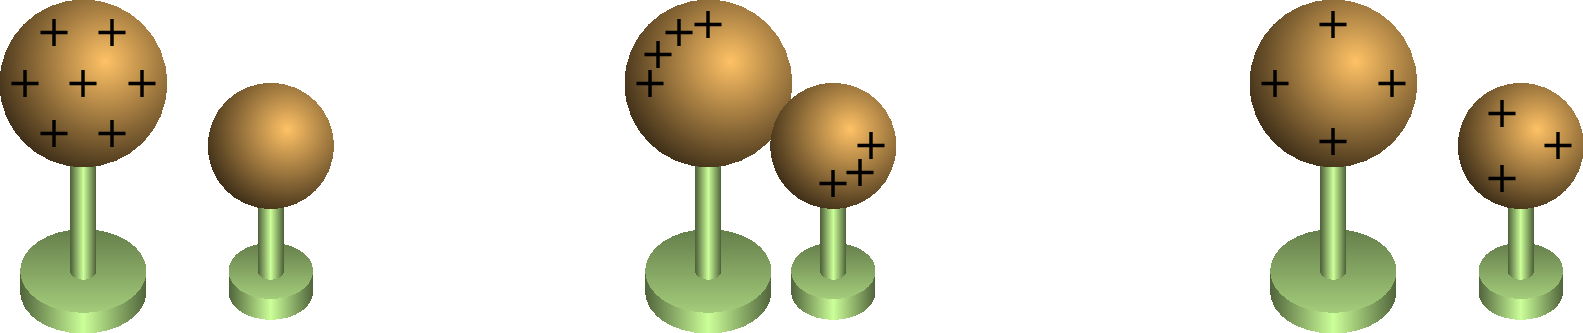 Eletrização por condução devido à
transferência de eletrões entre duas esferas condutoras.